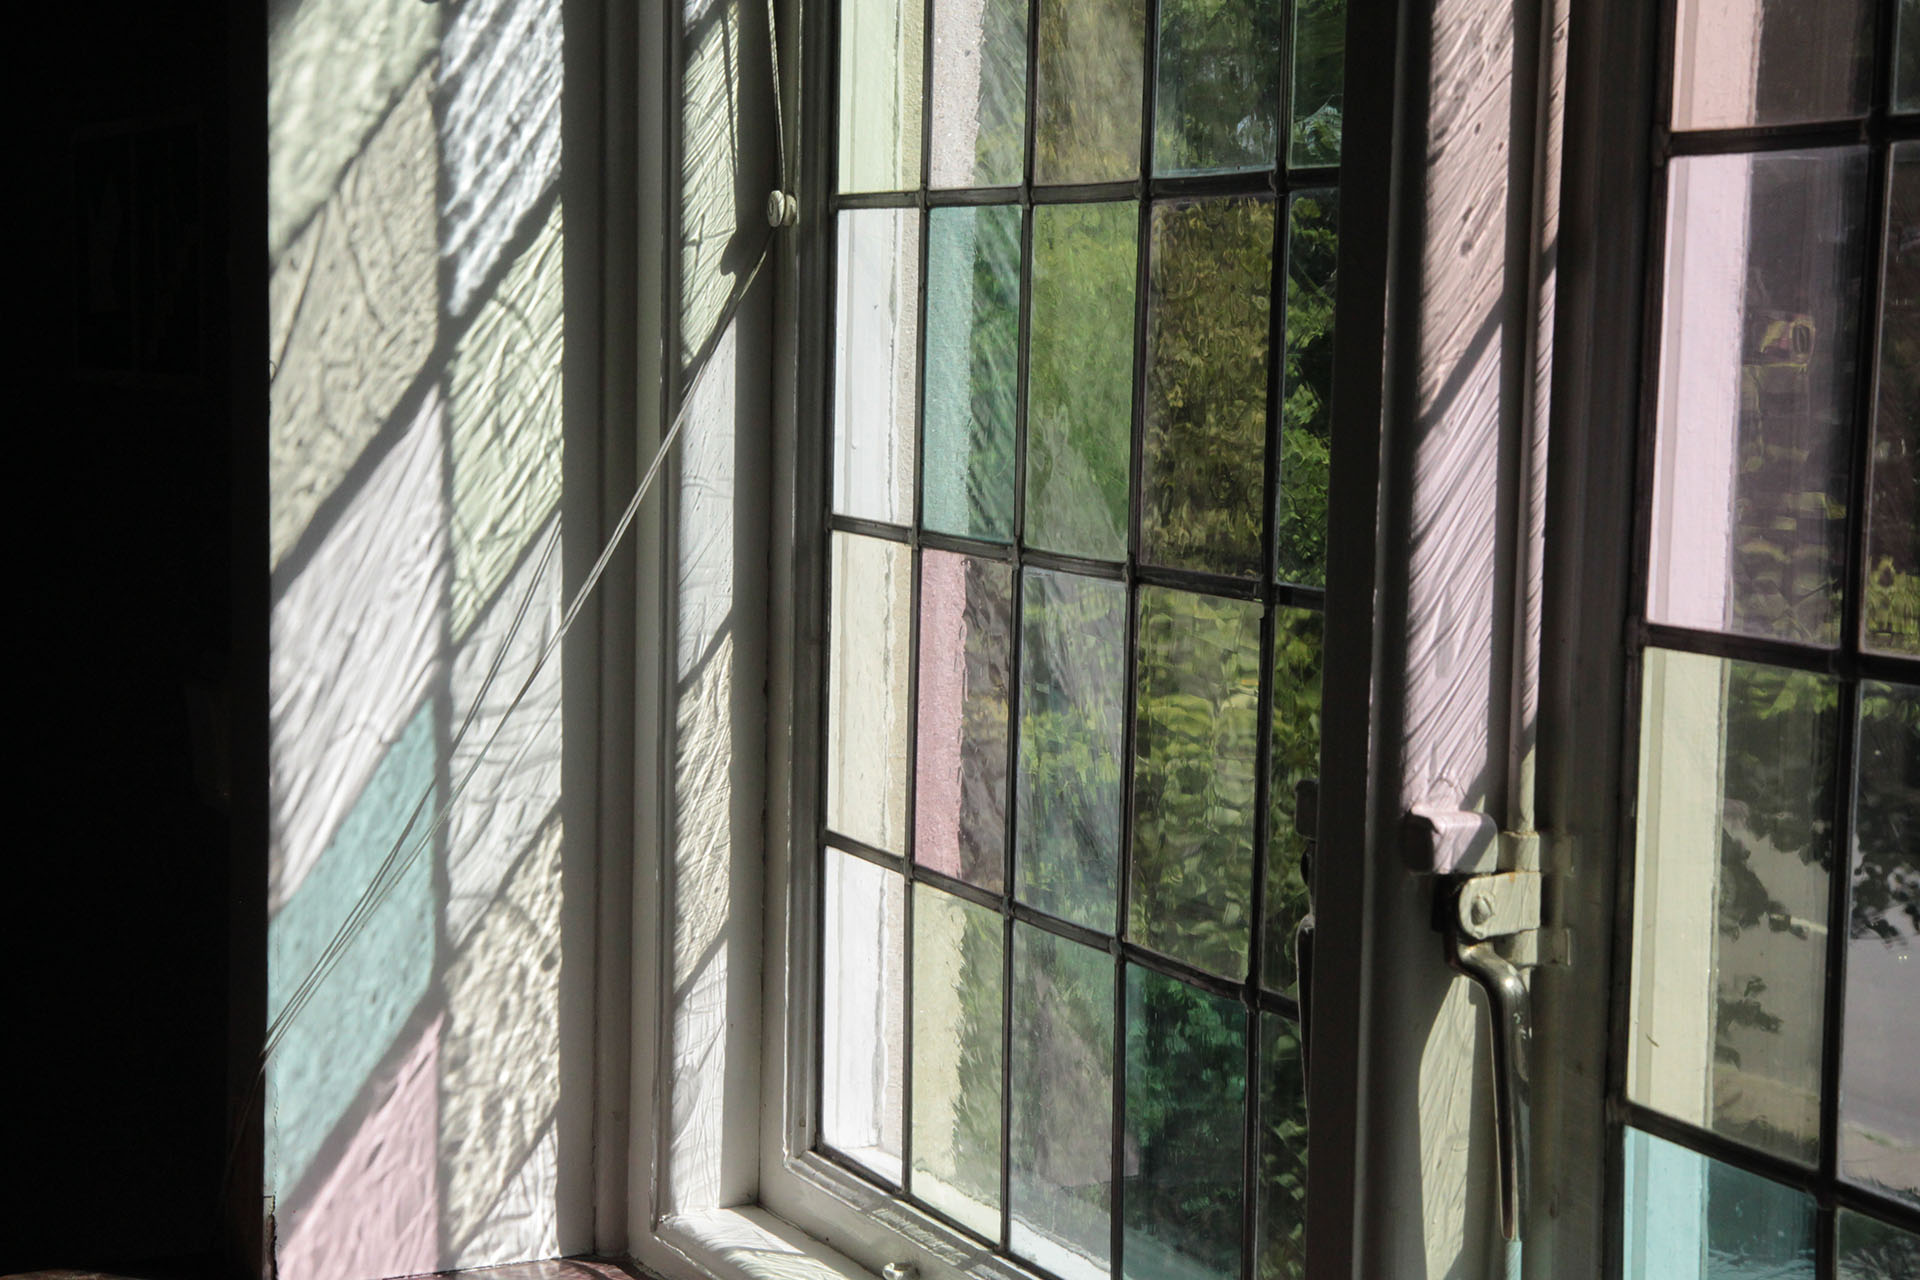 Ett gammaldags fönster med blyinfattade rutor. Solen faller in genom fönstret och rutorna bildar ett möster i pastellfärger på fönsterkarmen.